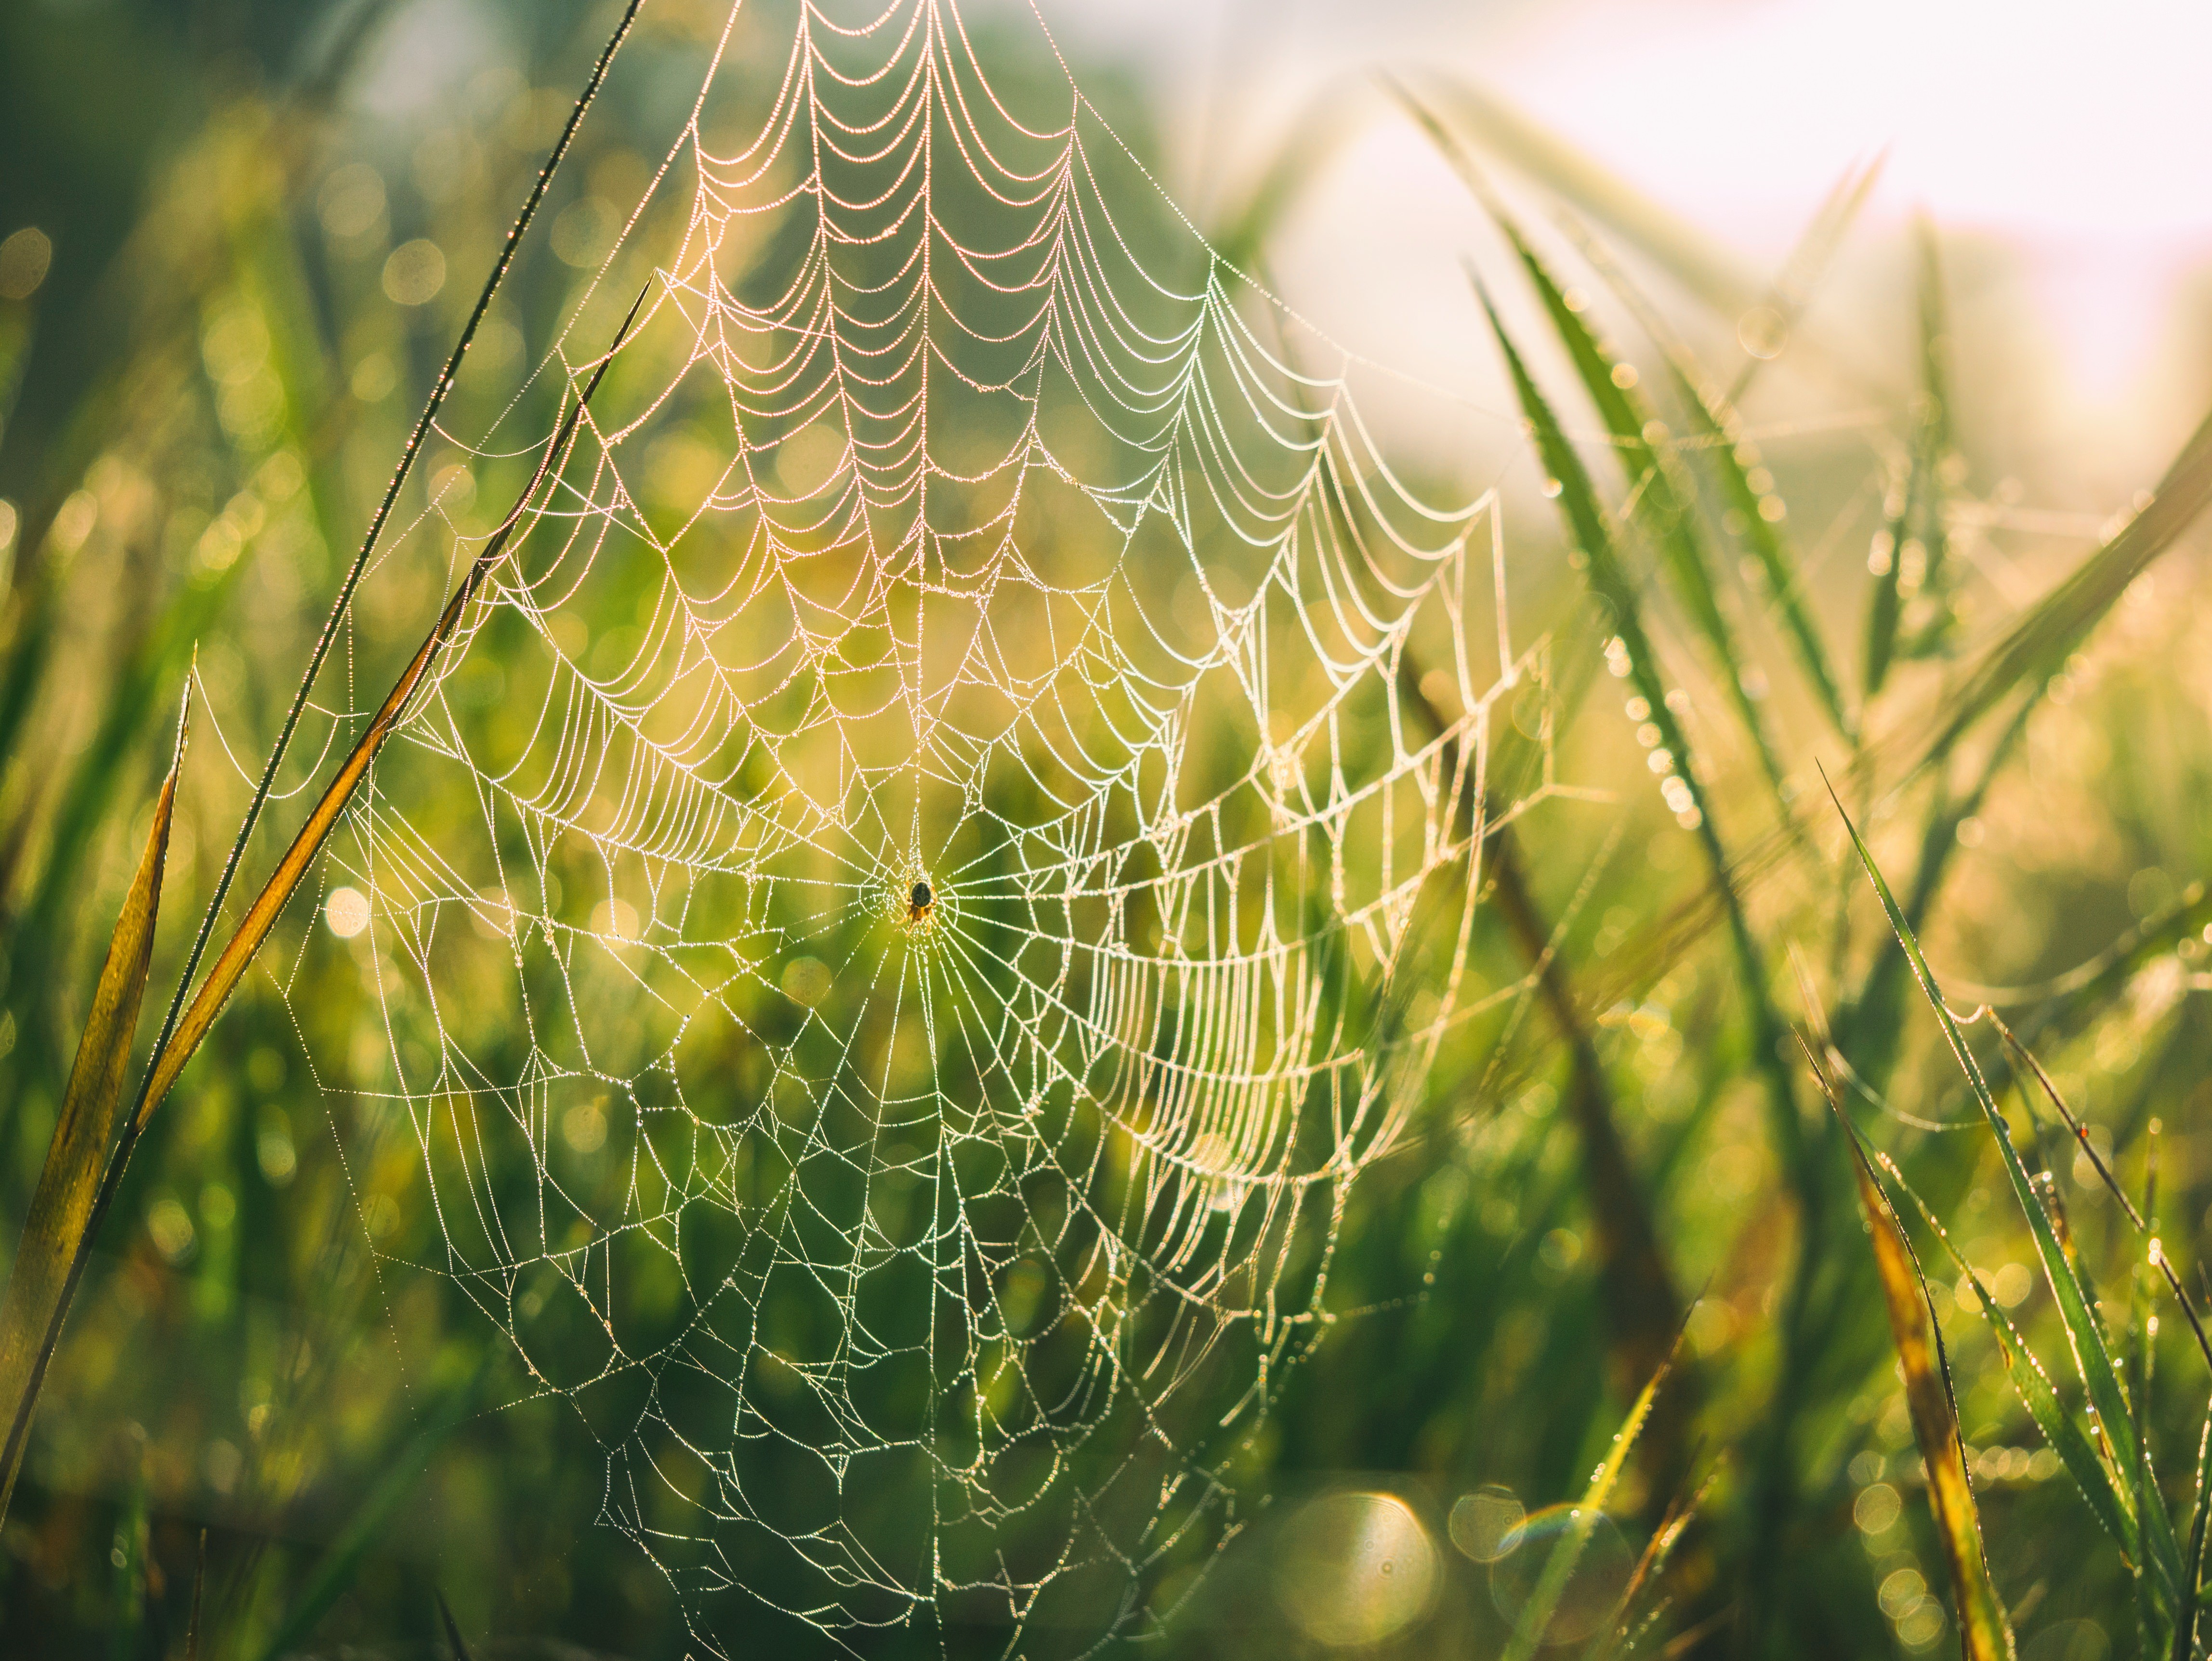 General 4592x3448 landscape spiderwebs spider dew grass vibrant summer closeup